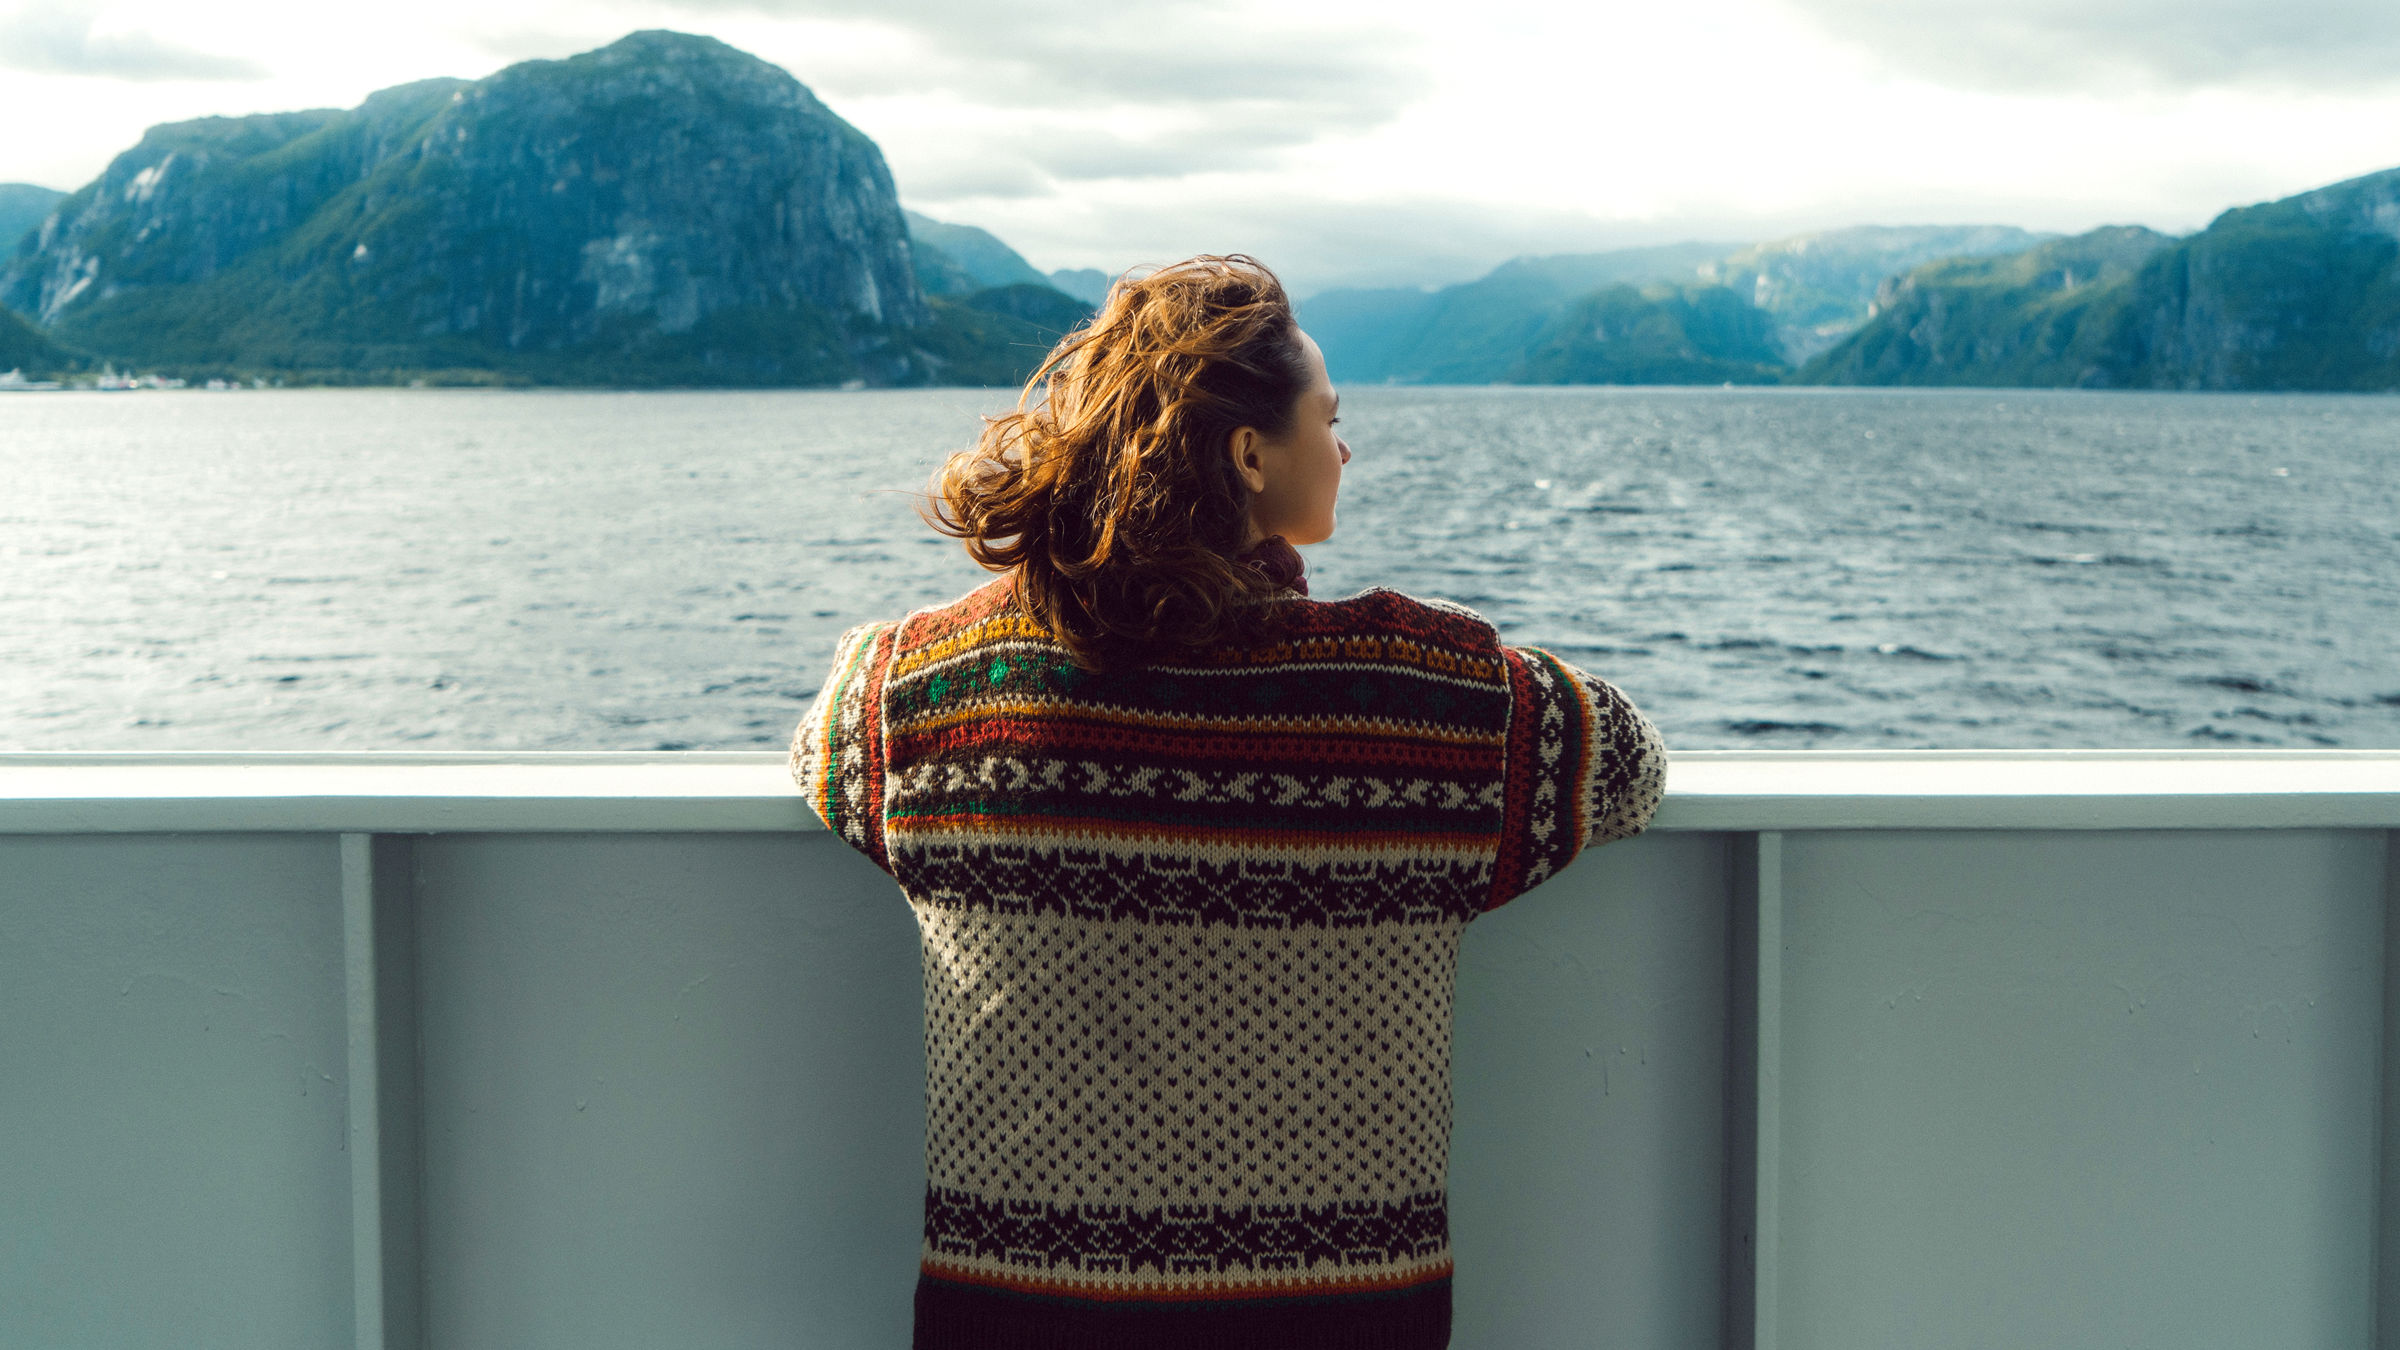 Jente står på ferge og ser utover fjord og fjell